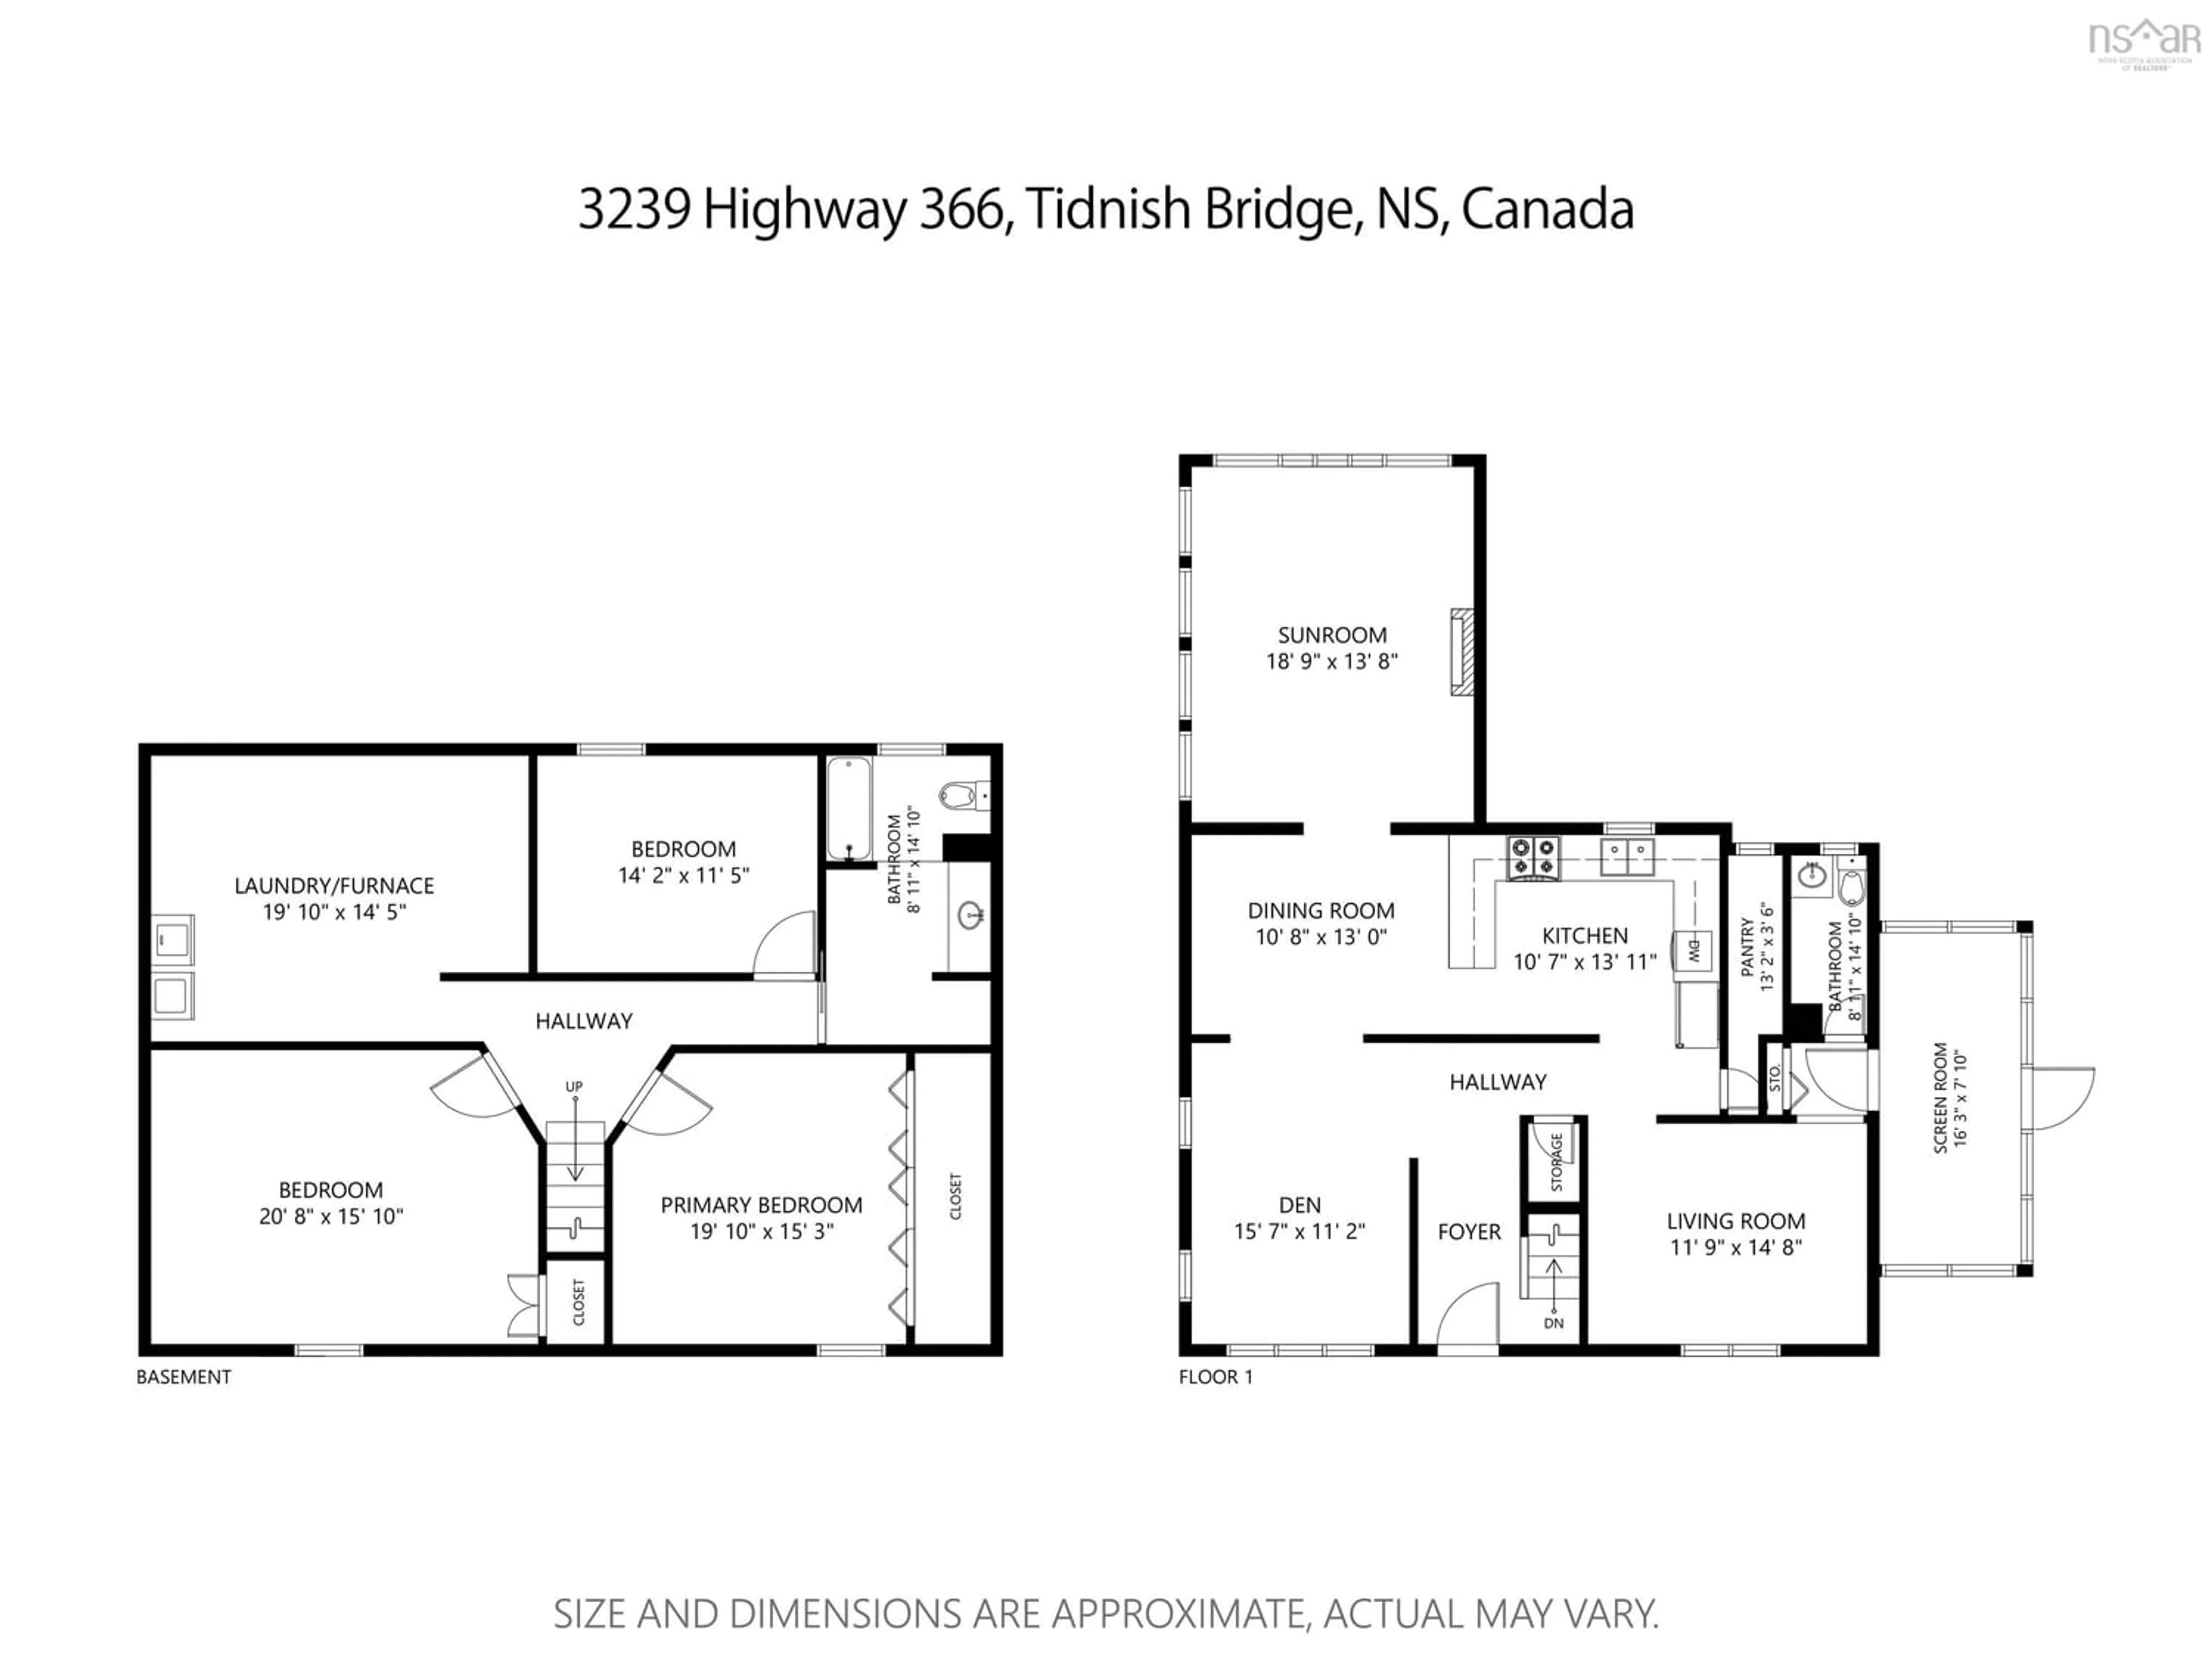 Floor plan for 3241 366 Hwy, Tidnish Bridge Nova Scotia B4H 3X9